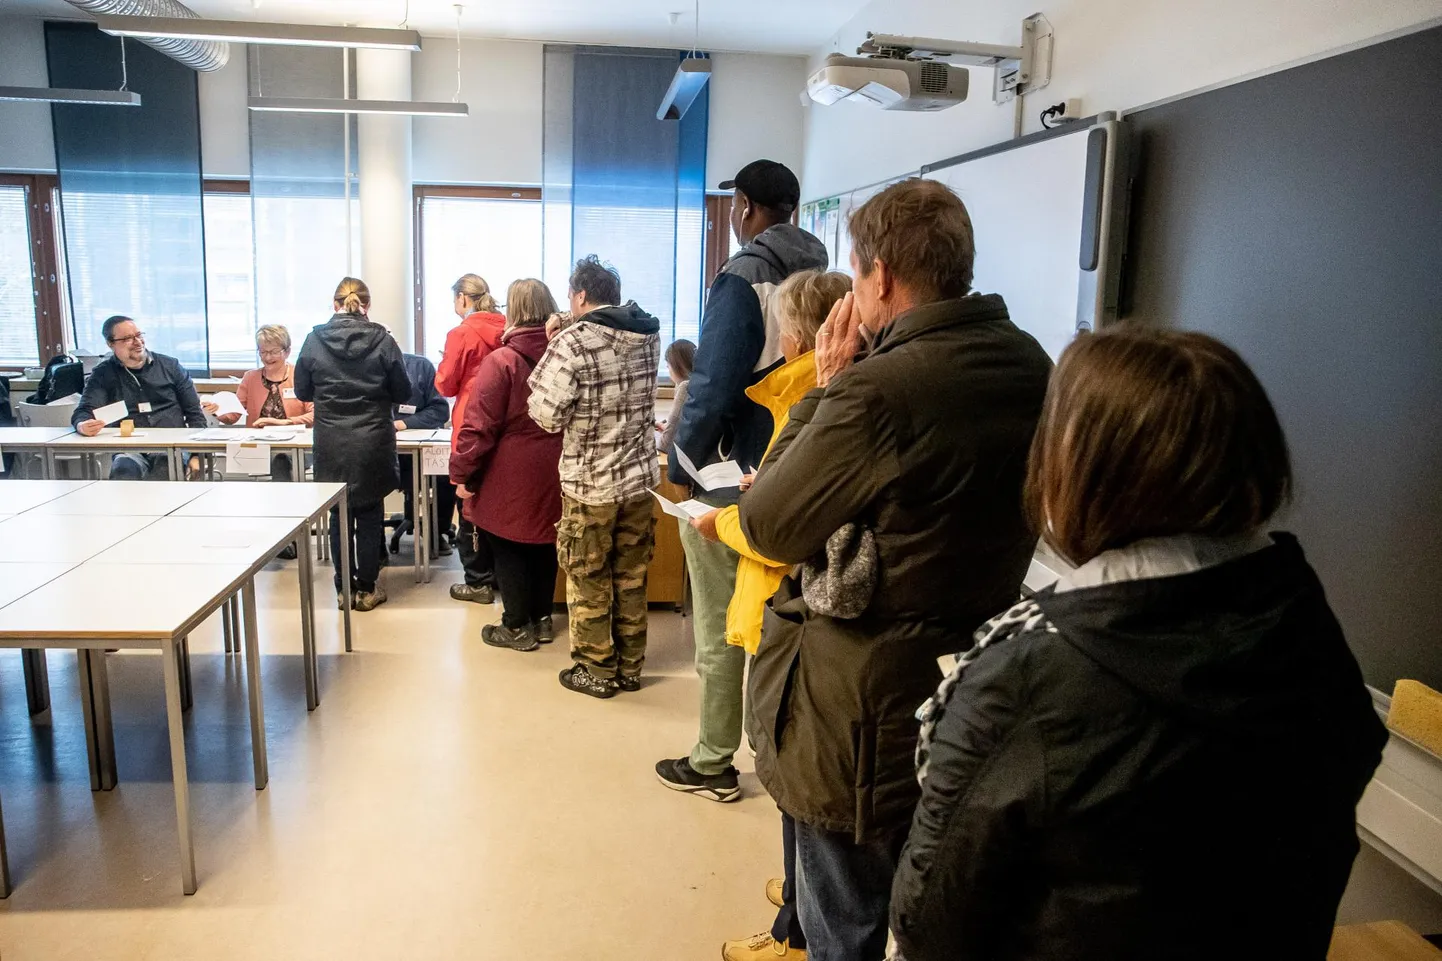 Hääletajad ootamas oma järjekorda koolimajas avatud valimisjaoskonnas Espoos. Nii mõningi selles reas seisnu pidi veel suunduma teisegi järjekorda, sest samas koolimajas olid ühe koridori peal kolme piirkonna jaoskonnad, kuid enamik inimesi pööras algatuseks sisse esimesest avatud klassiuksest. FOTO:SANDER ILVEST/POSTIMEES FOTO: Sander Ilvest